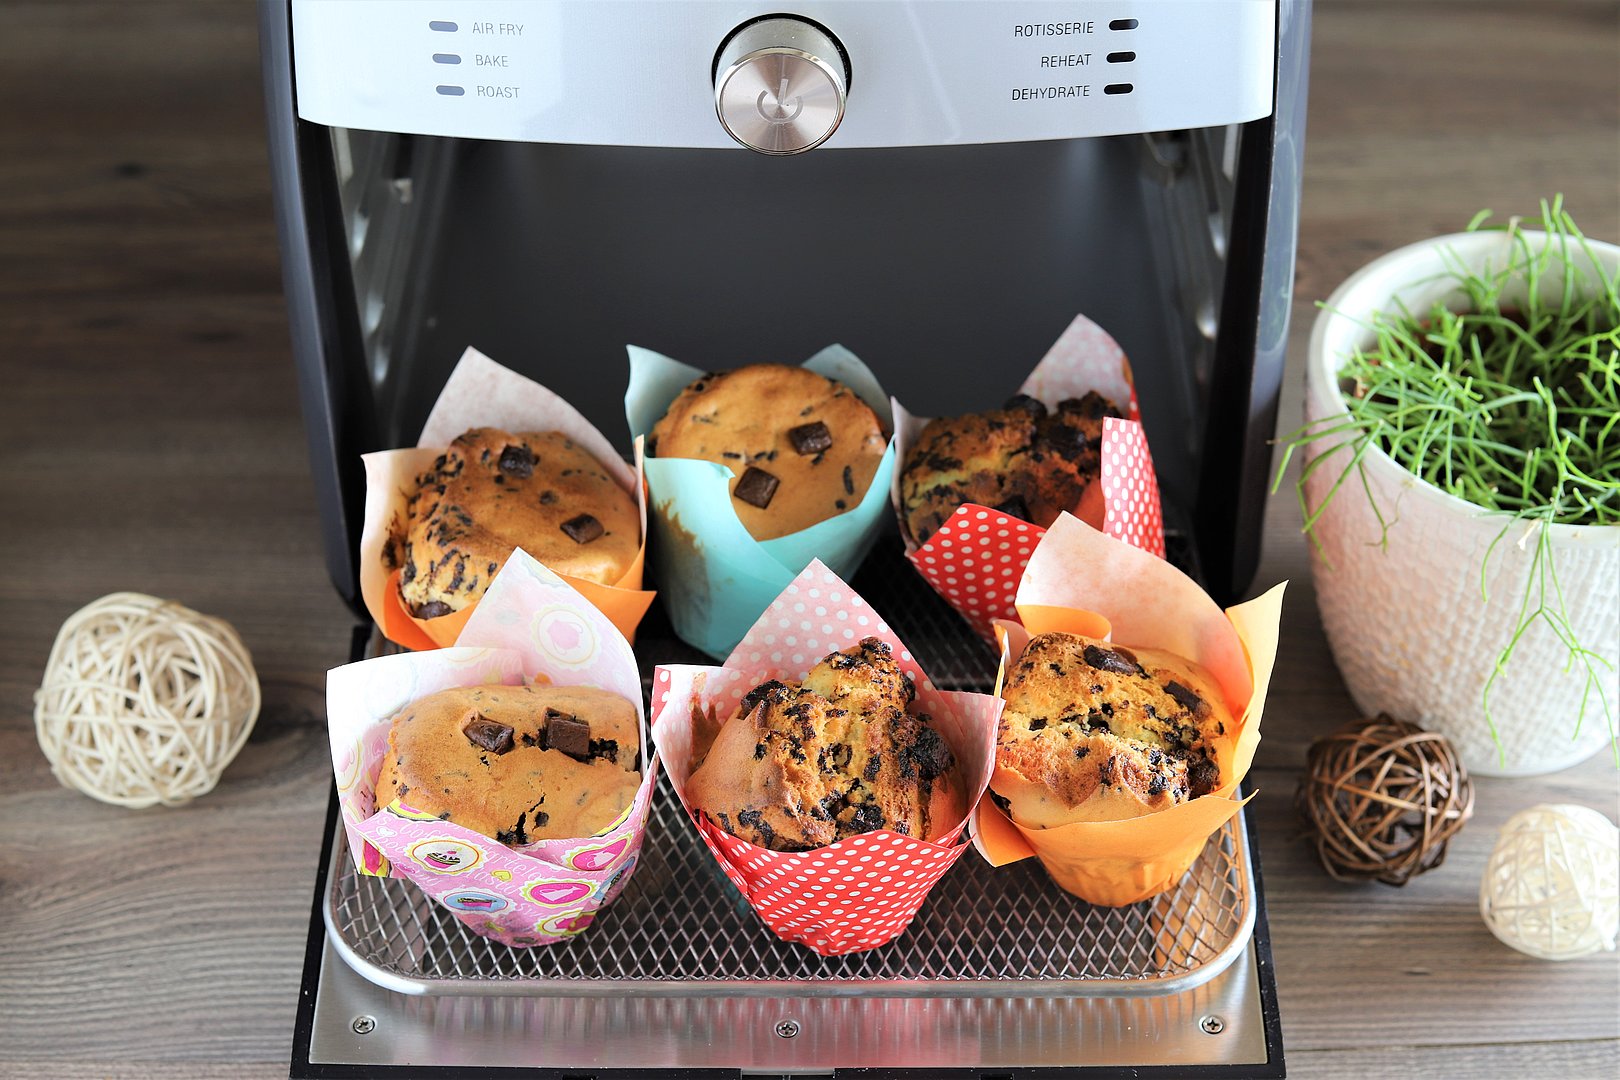 Muffins mit Schokostückchen im Deluxe Air Fryer von Pampered Chef®